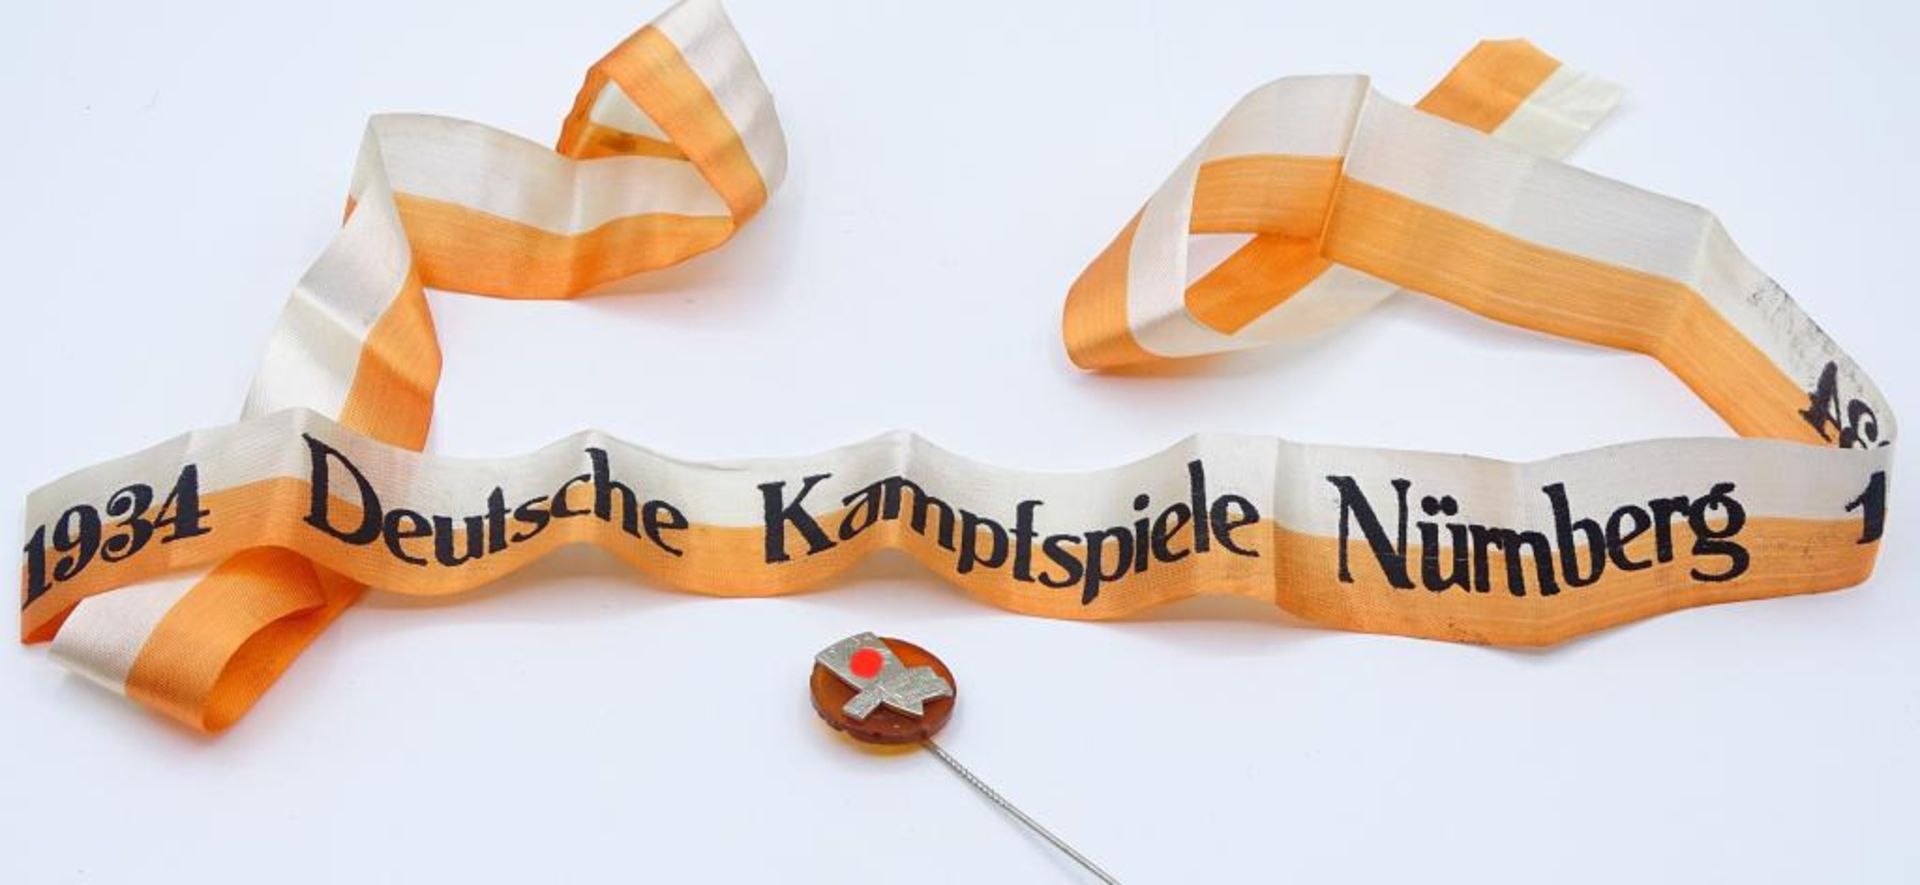 Band und Nadel, Deutsche Kampfspiele Nürnberg 193